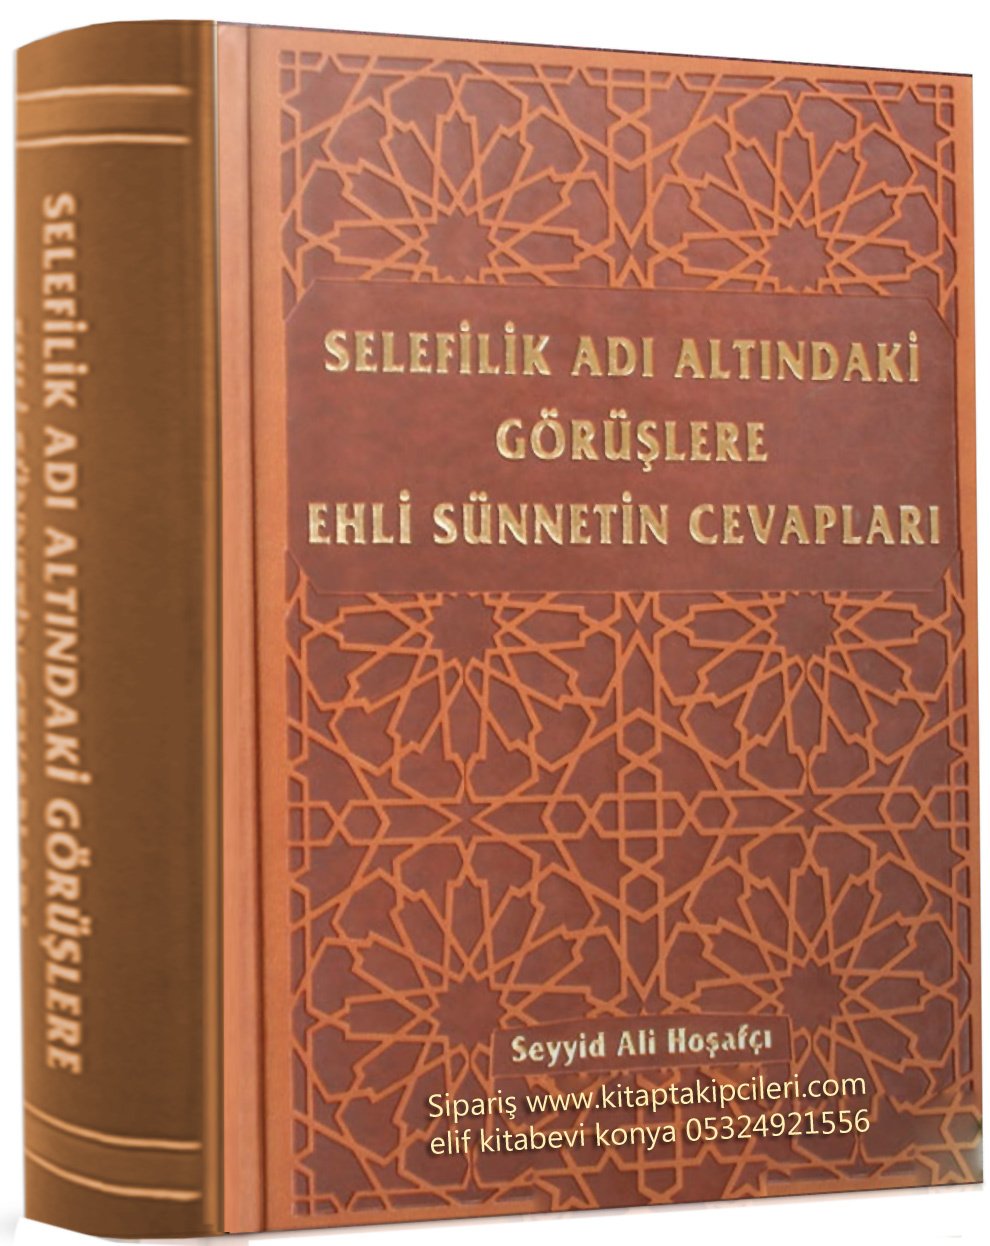 Selefilik Adı Altındaki Görüşlere Ehli Sünnetin Cevapları, Yeni Baskı, Seyyid Ali Hoşafçı 1024 Sayfa